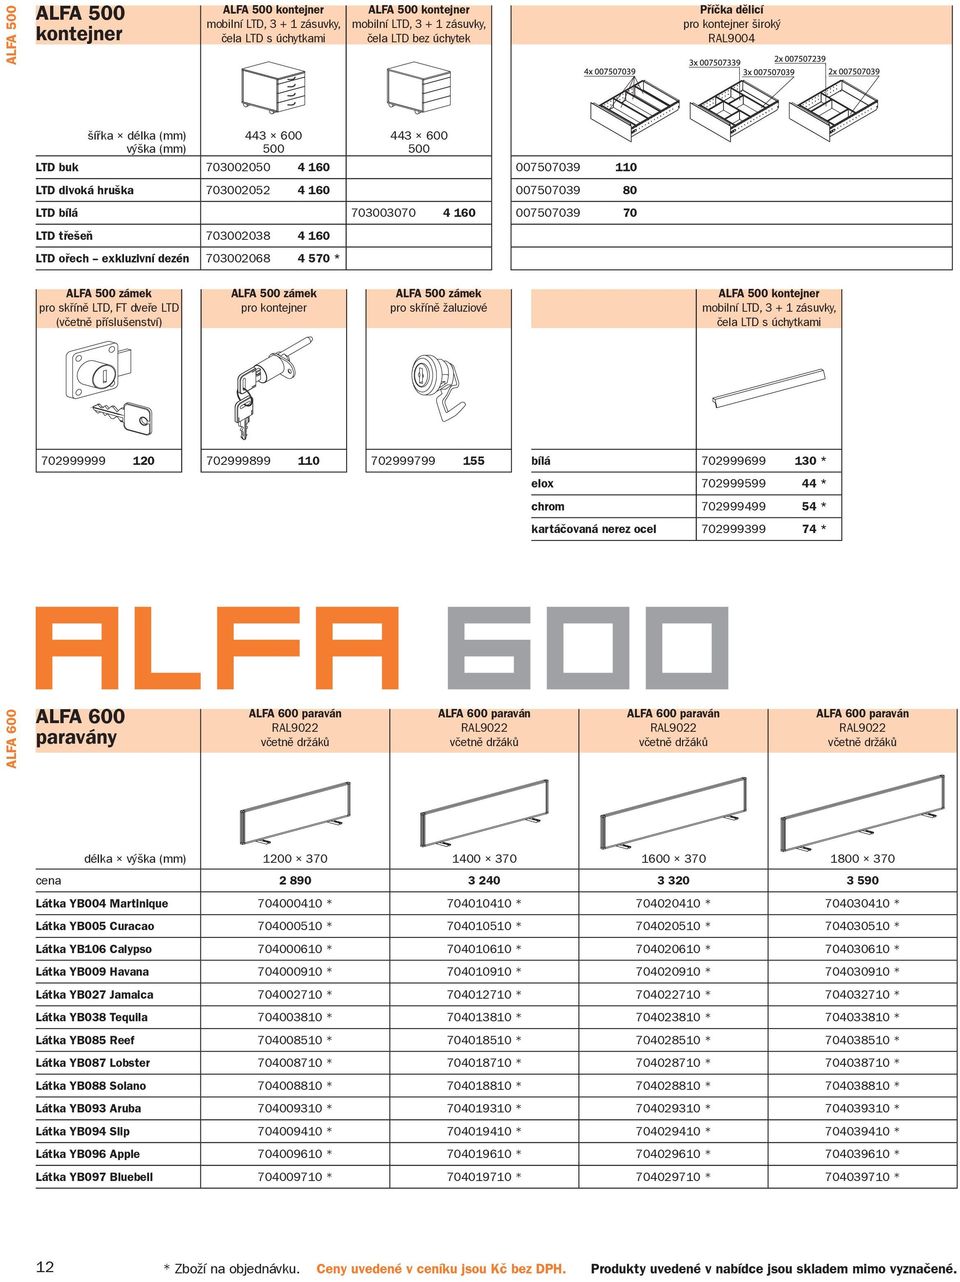 exkluzivní dezén 703002068 4 570 * ALFA 500 zámek pro skříně LTD, (včetně příslušenství) ALFA 500 zámek pro kontejner ALFA 500 zámek pro skříně žaluziové ALFA 500 kontejner mobilní LTD, 3 + 1